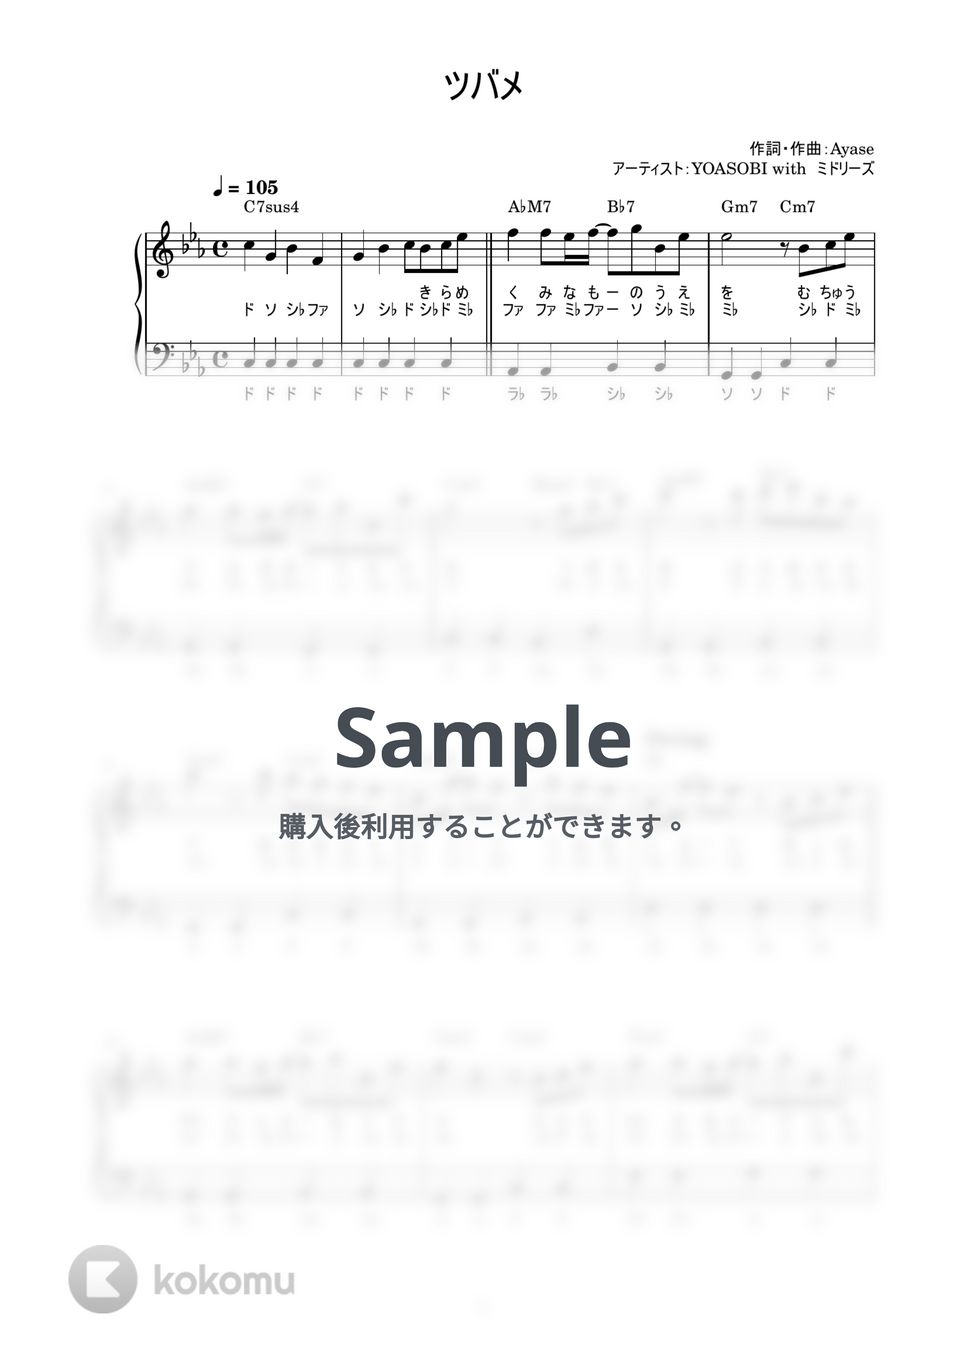 YOASOBI with ミドリーズ - ツバメ (かんたん / 歌詞付き / ドレミ付き / 初心者) by piano.tokyo